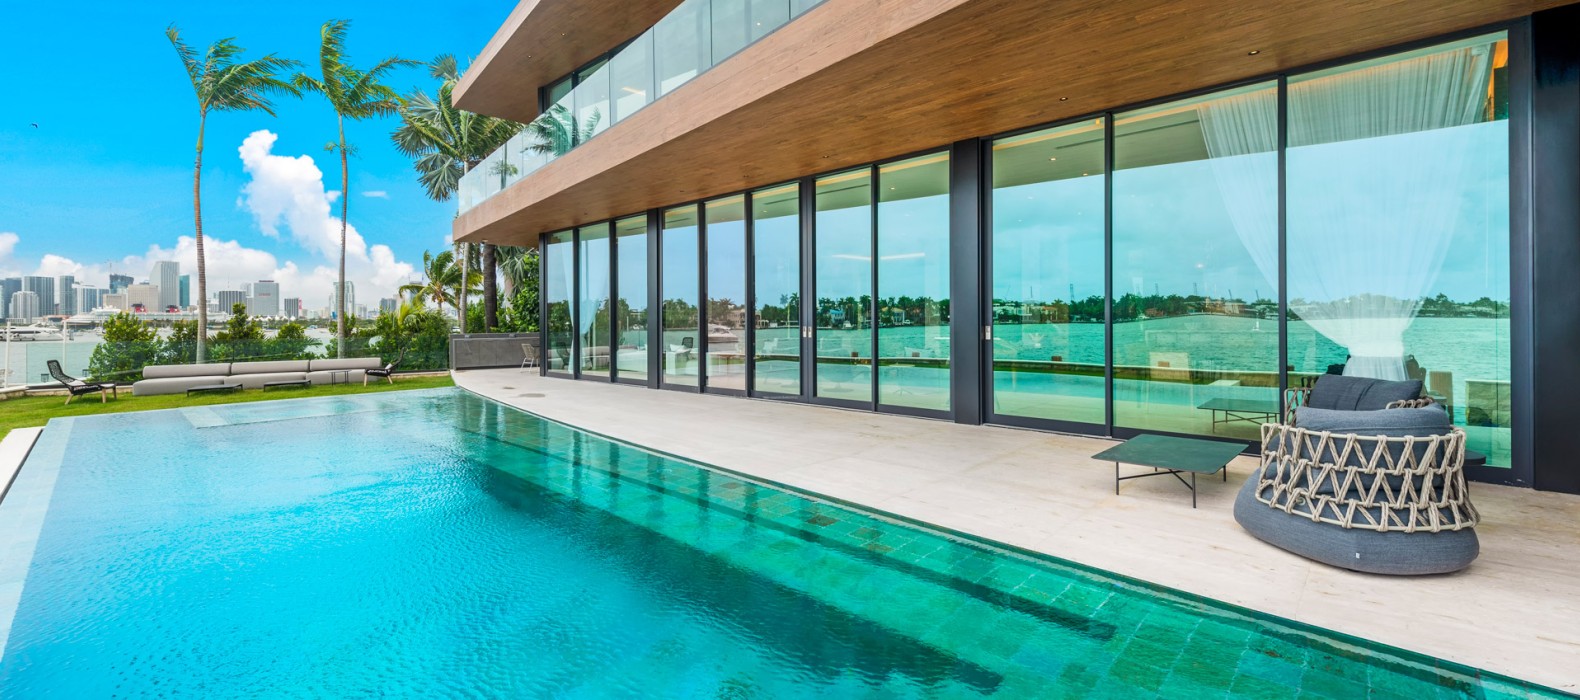 Exterior pool of Villa Laurent in Miami